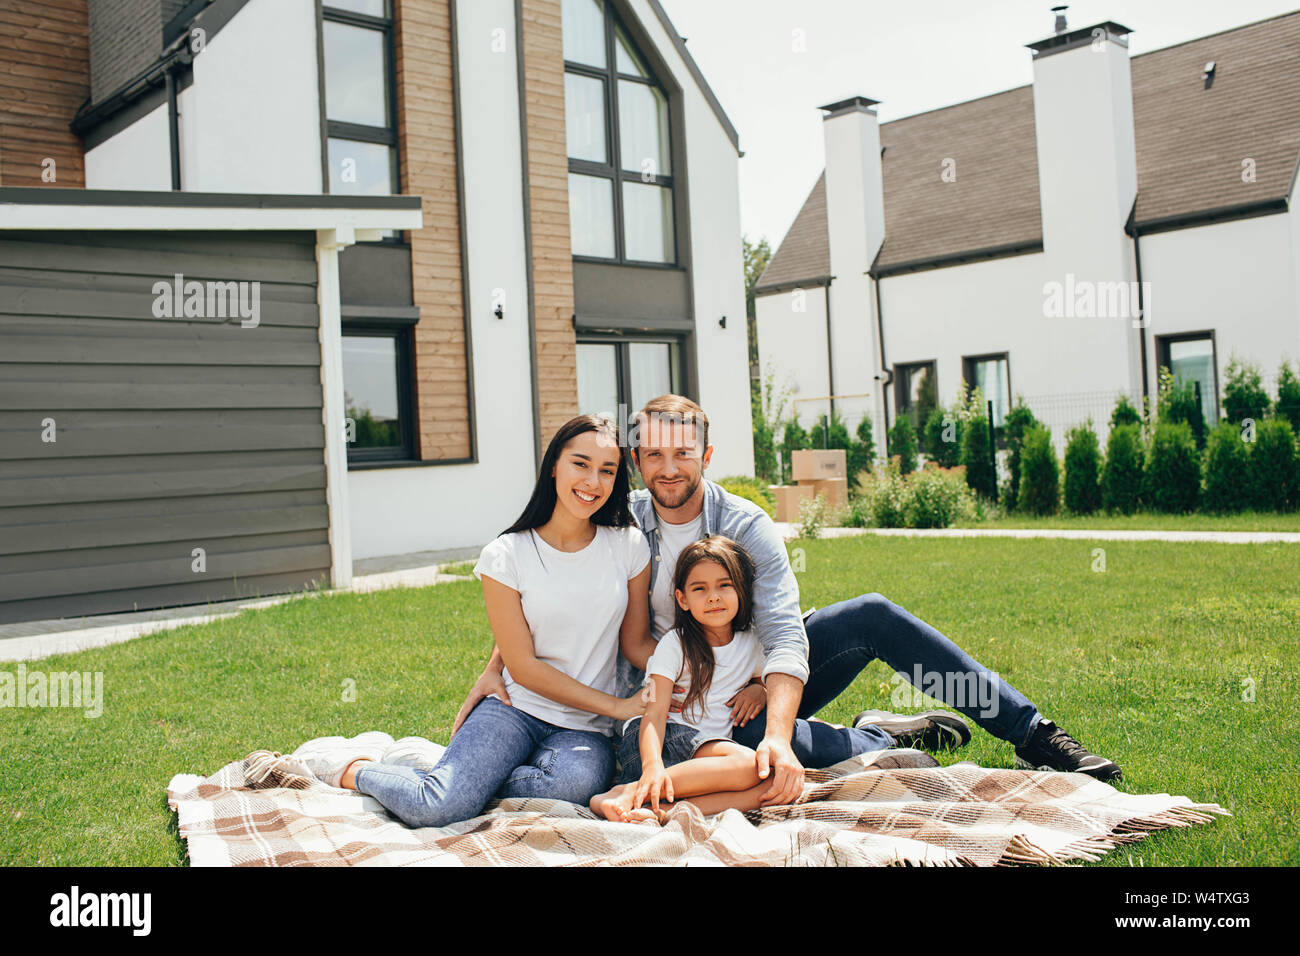 Familie sitzt auf Rasen im Hinterhof, großes, modernes Haus auf Hintergrund Stockfoto